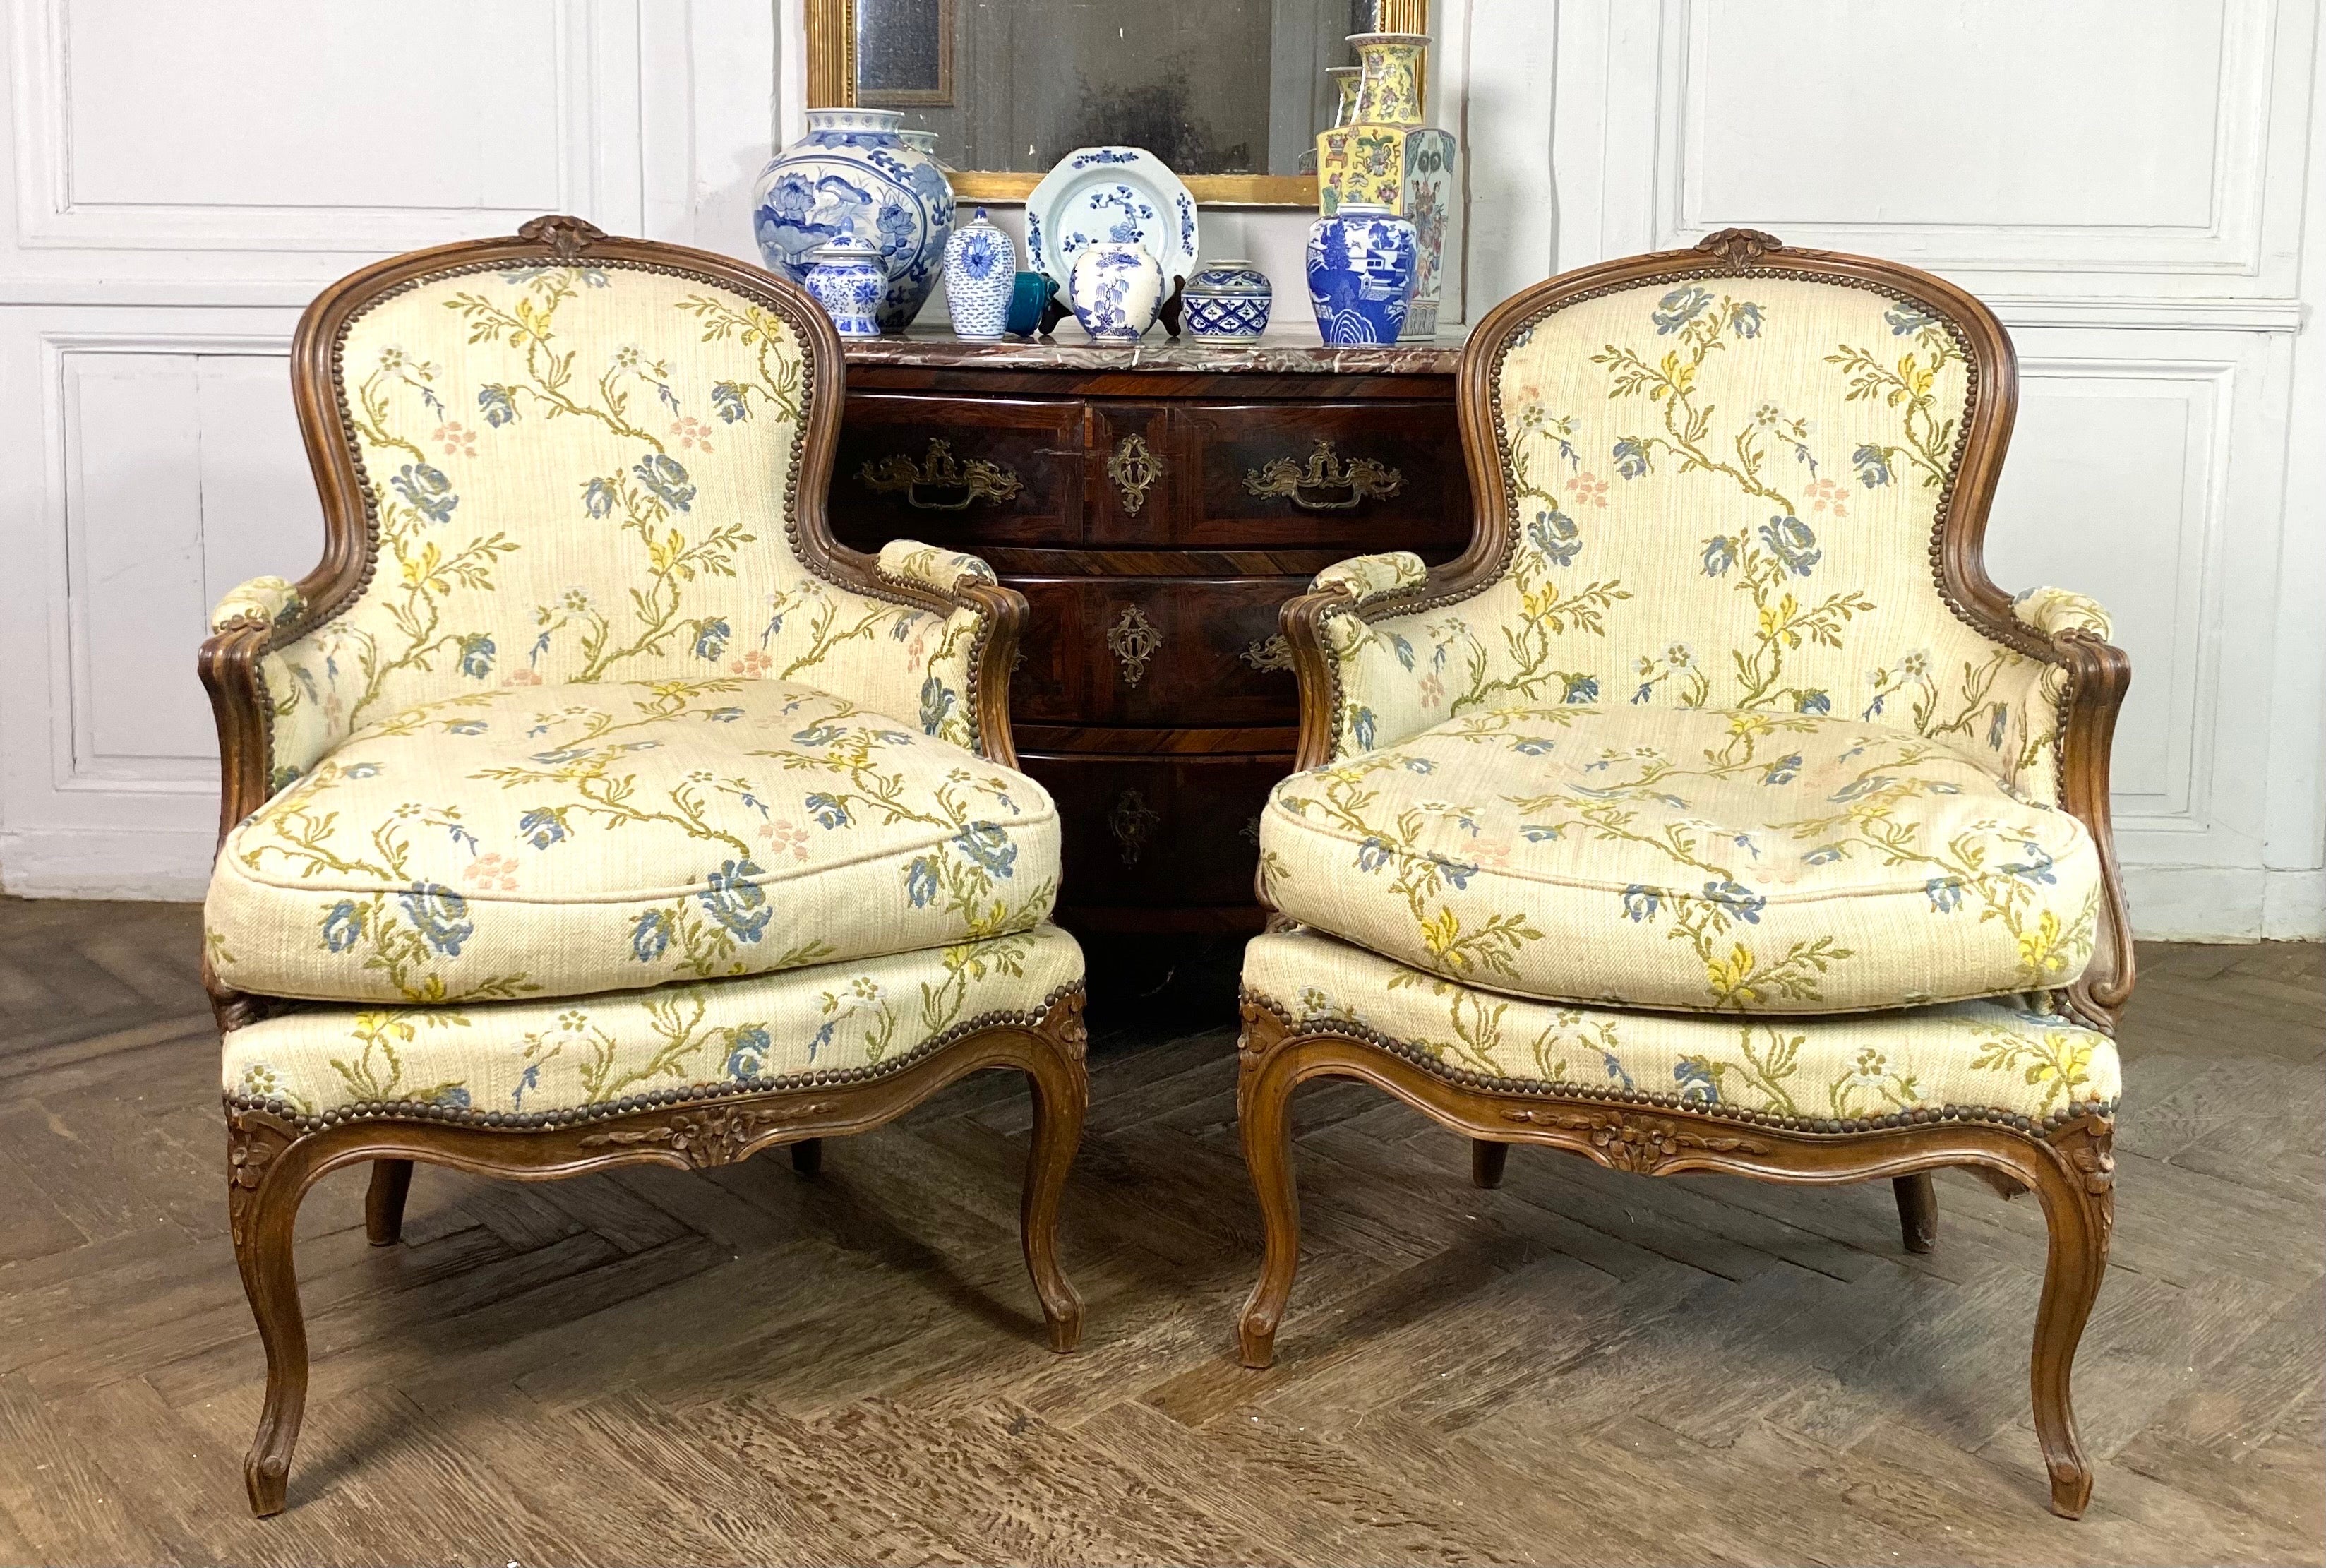 Merveilleuse paire de fauteuils bergers de style Louis XV du XIXème siècle en bois sculpté. Décor végétal de fleurs sculptées sur le dossier du cabriolet et sur la ceinture mobile profondément moulée.
Les accoudoirs anti-coup de fouet sont munis de